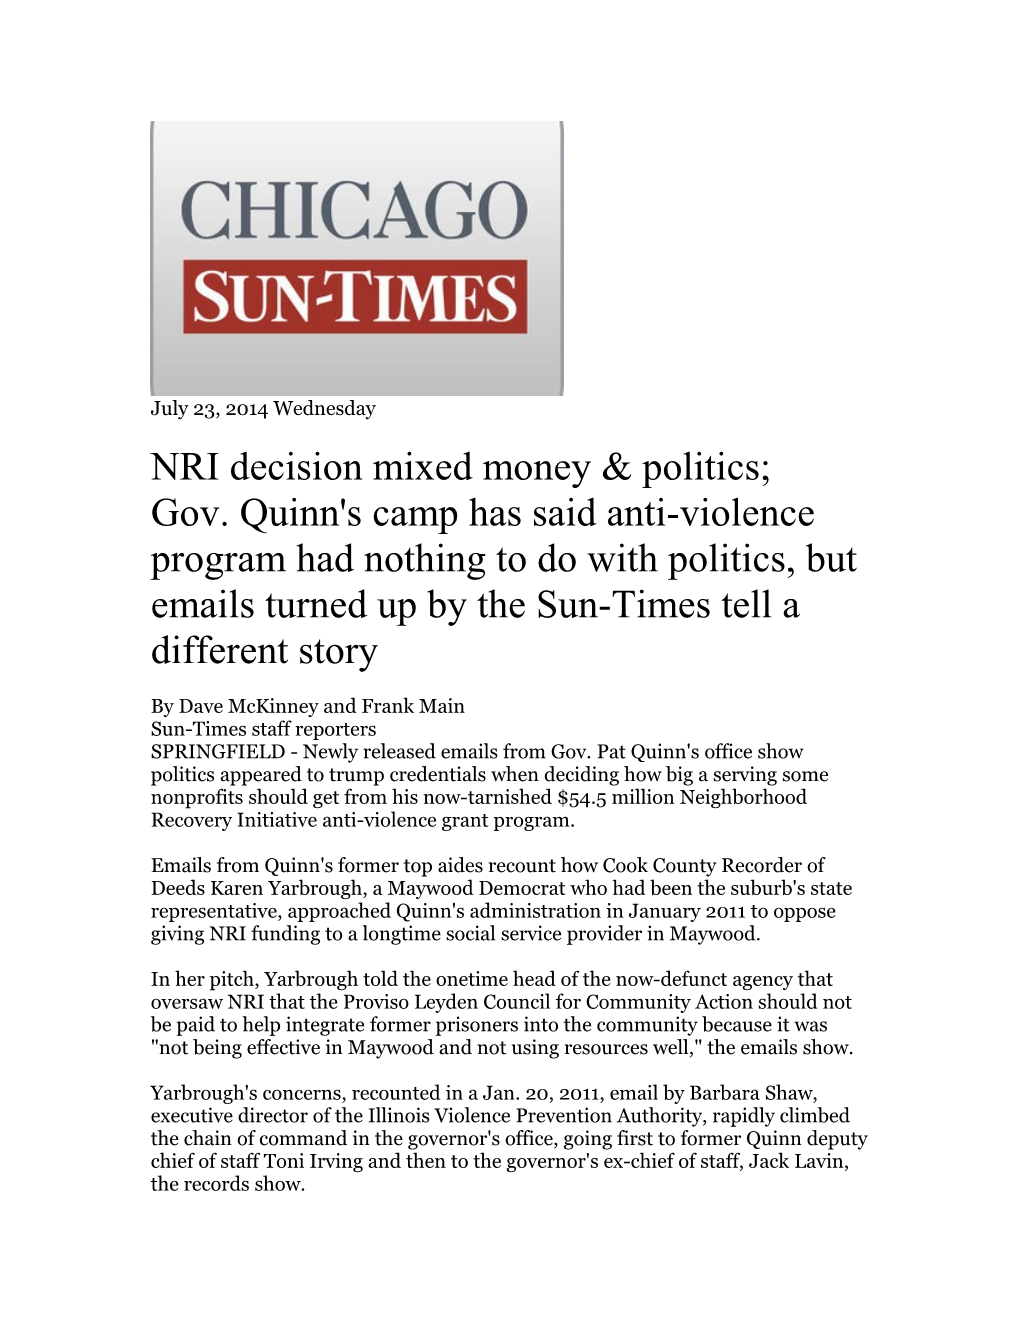 NRI Decision Mixed Money & Politics;